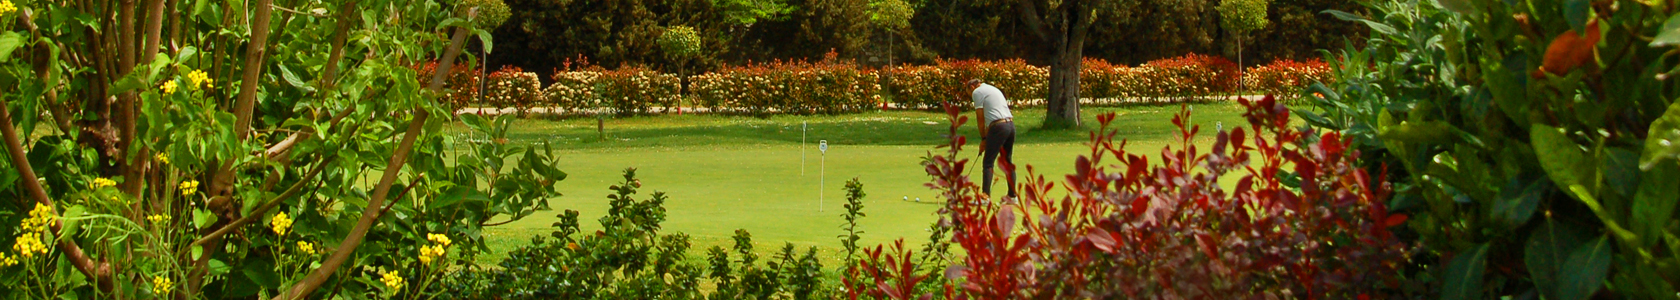 Imágen campo de golf con mucha gente disfrutando de un día soleado